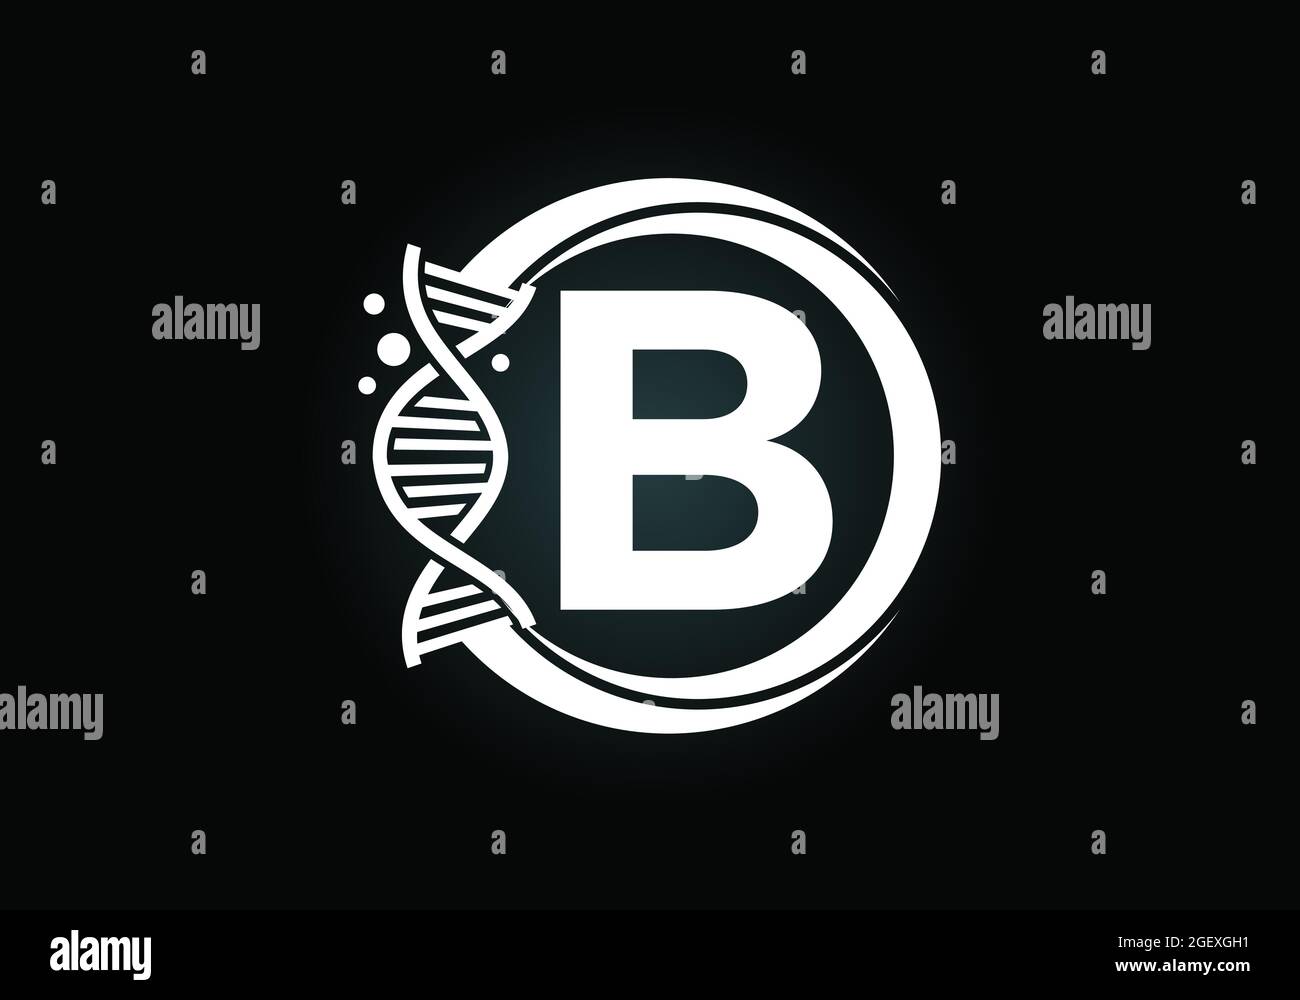 Anfängliches B-Monogramm-Alphabet in einem Kreis mit DNA. Genetics Logo Design Konzept. Schrift-Emblem. Logo für Medizin, Wissenschaft, Labor, Wirtschaft Stock Vektor